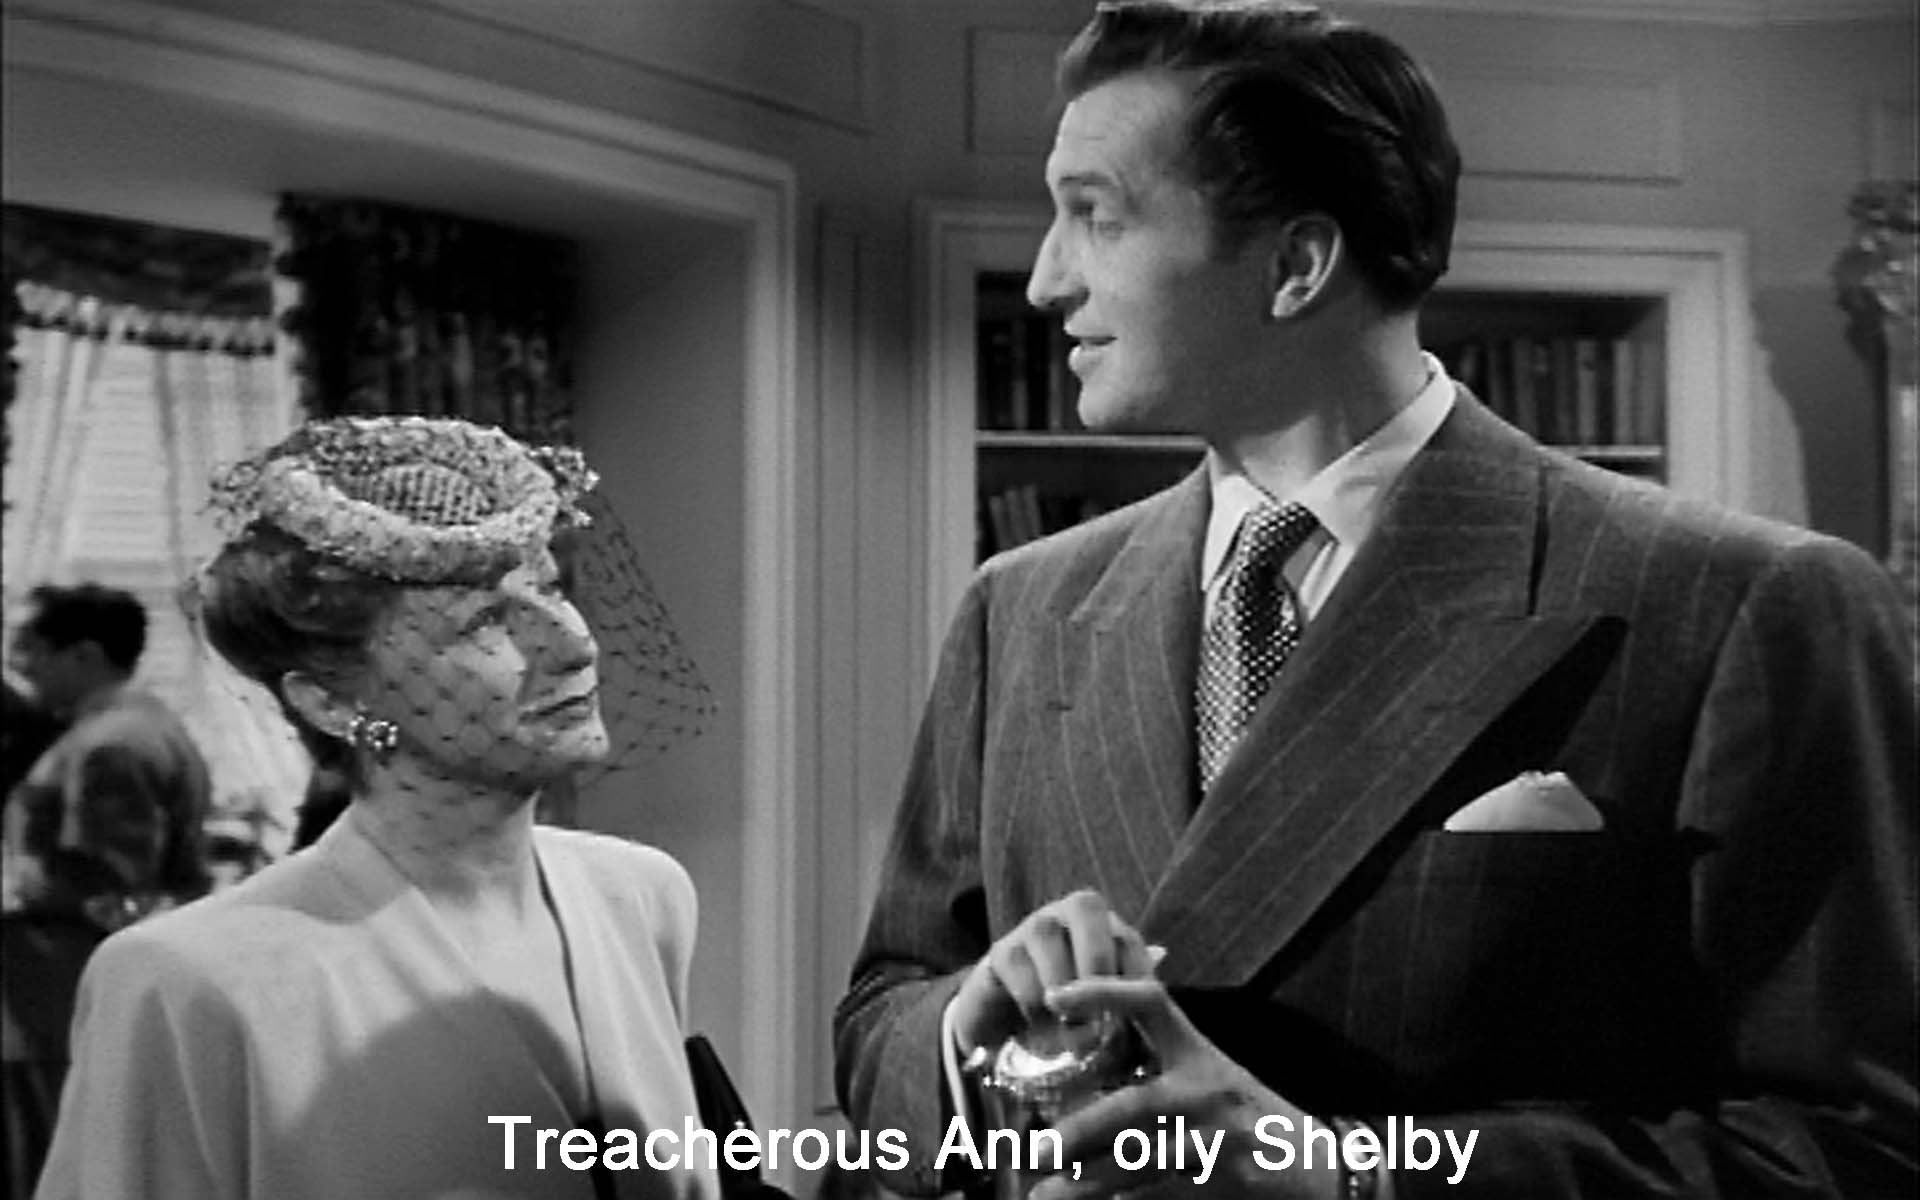 Treacherous Ann, oily Shelby